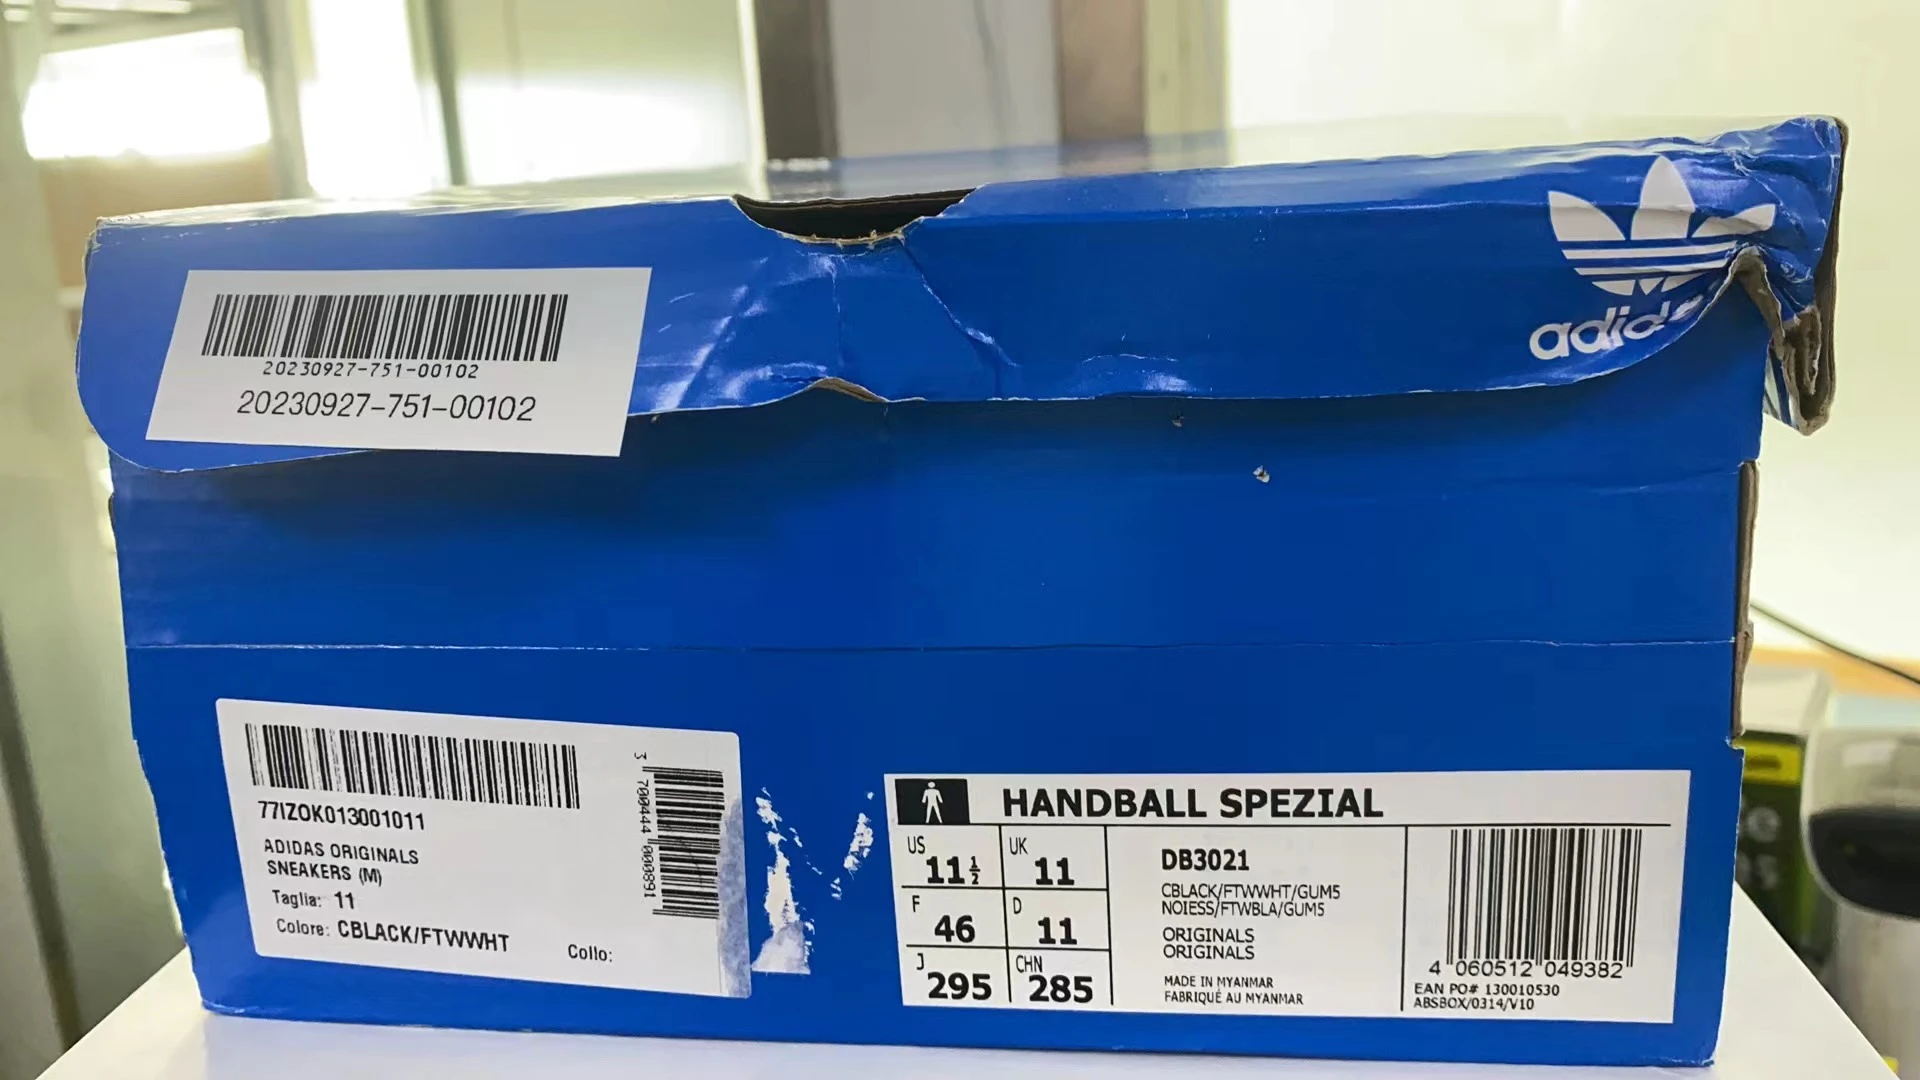 【瑕疵/鞋盒破损】Handball Spezial Sneakers(US11.5/法码46) 商品